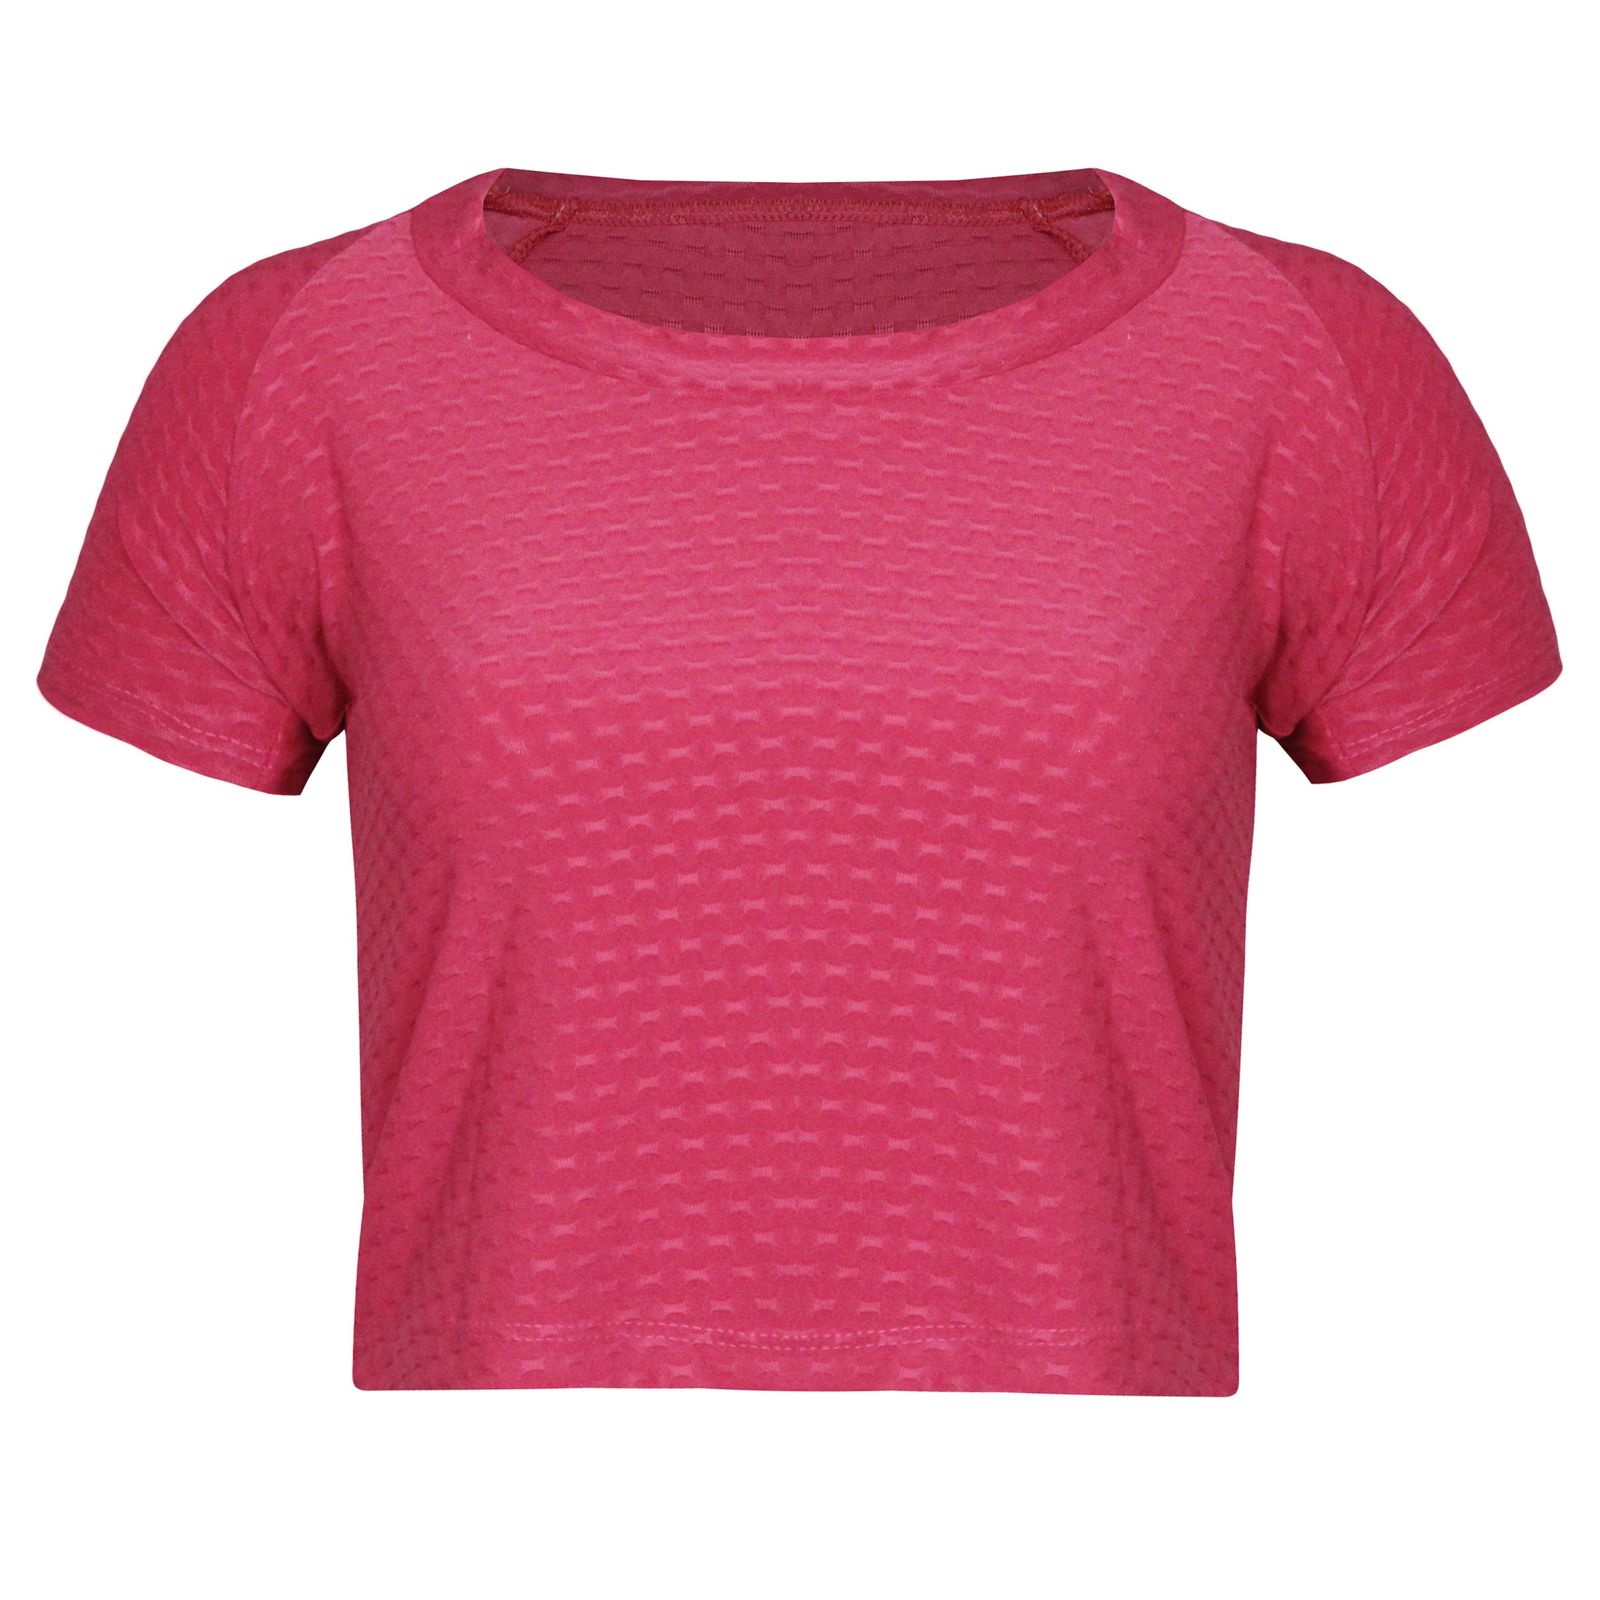 ست تی شرت و لگینگ ورزشی زنانه ماییلدا مدل 4348-6743 رنگ صورتی -  - 2